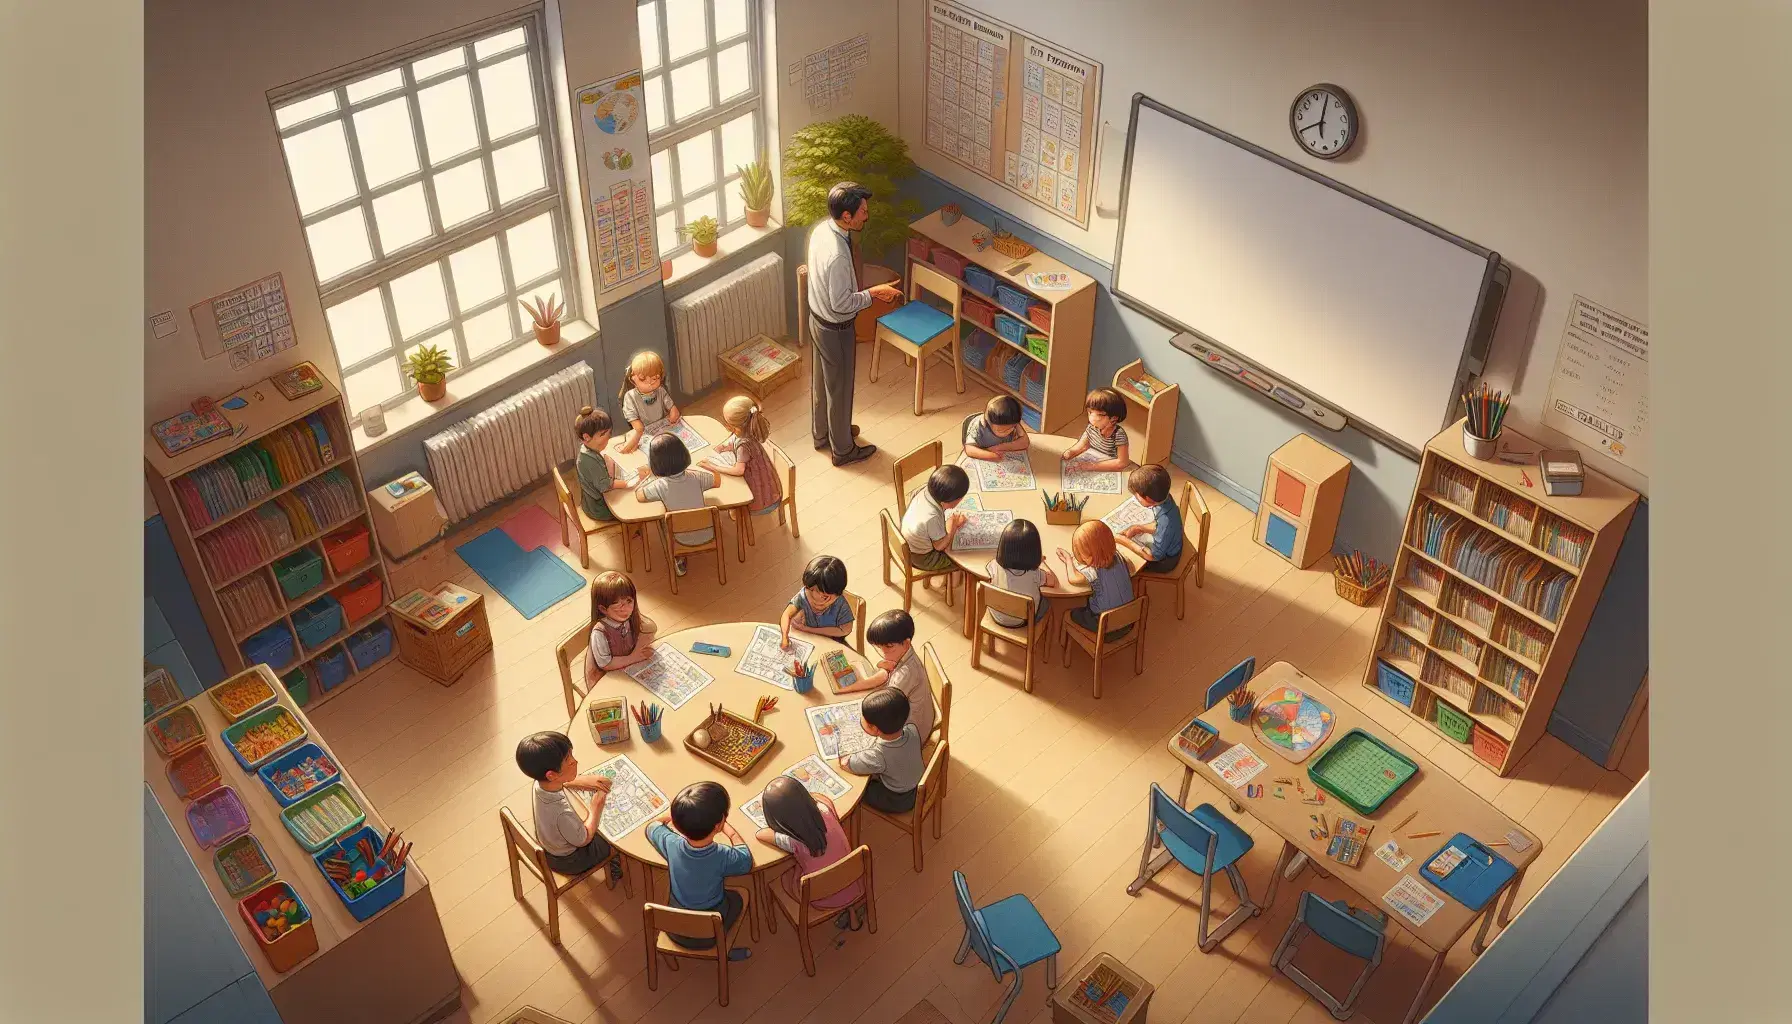 Aula de primaria con niños dibujando en mesa redonda, maestro asistiendo y estantes con libros y juegos educativos.